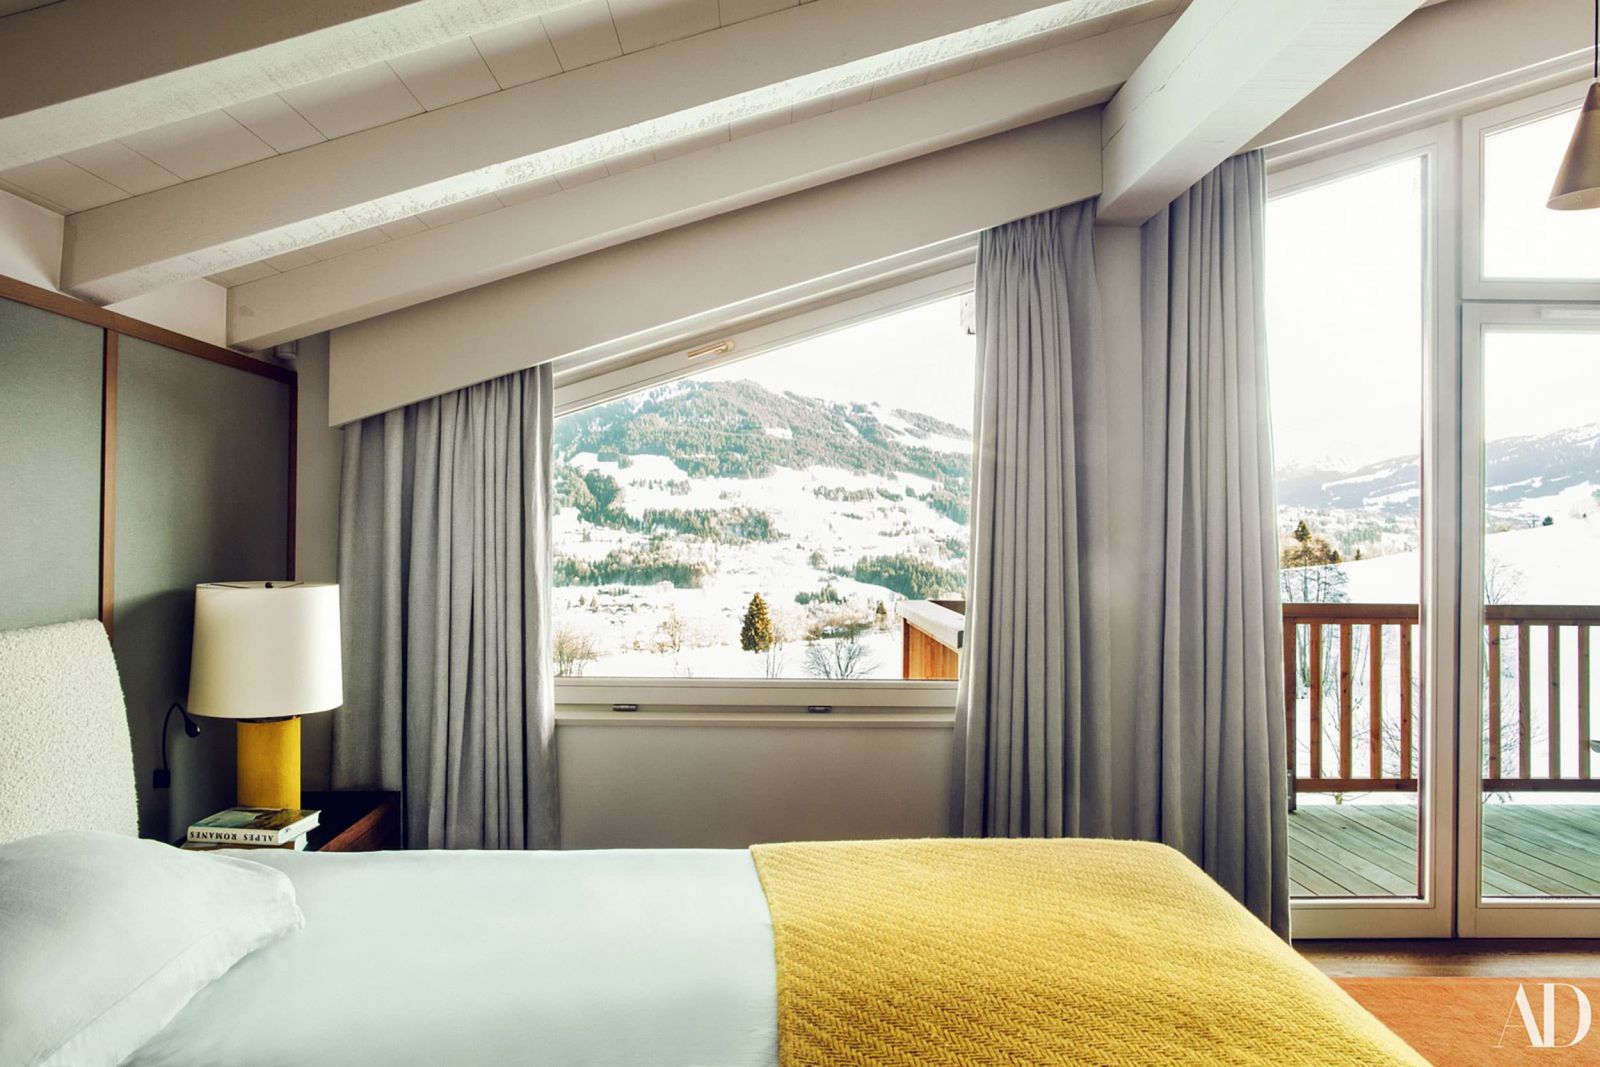 Phòng ngủ nhấn nhá màu vàng kết hợp với màu xanh pastel sáng khoái và nhẹ nhàng